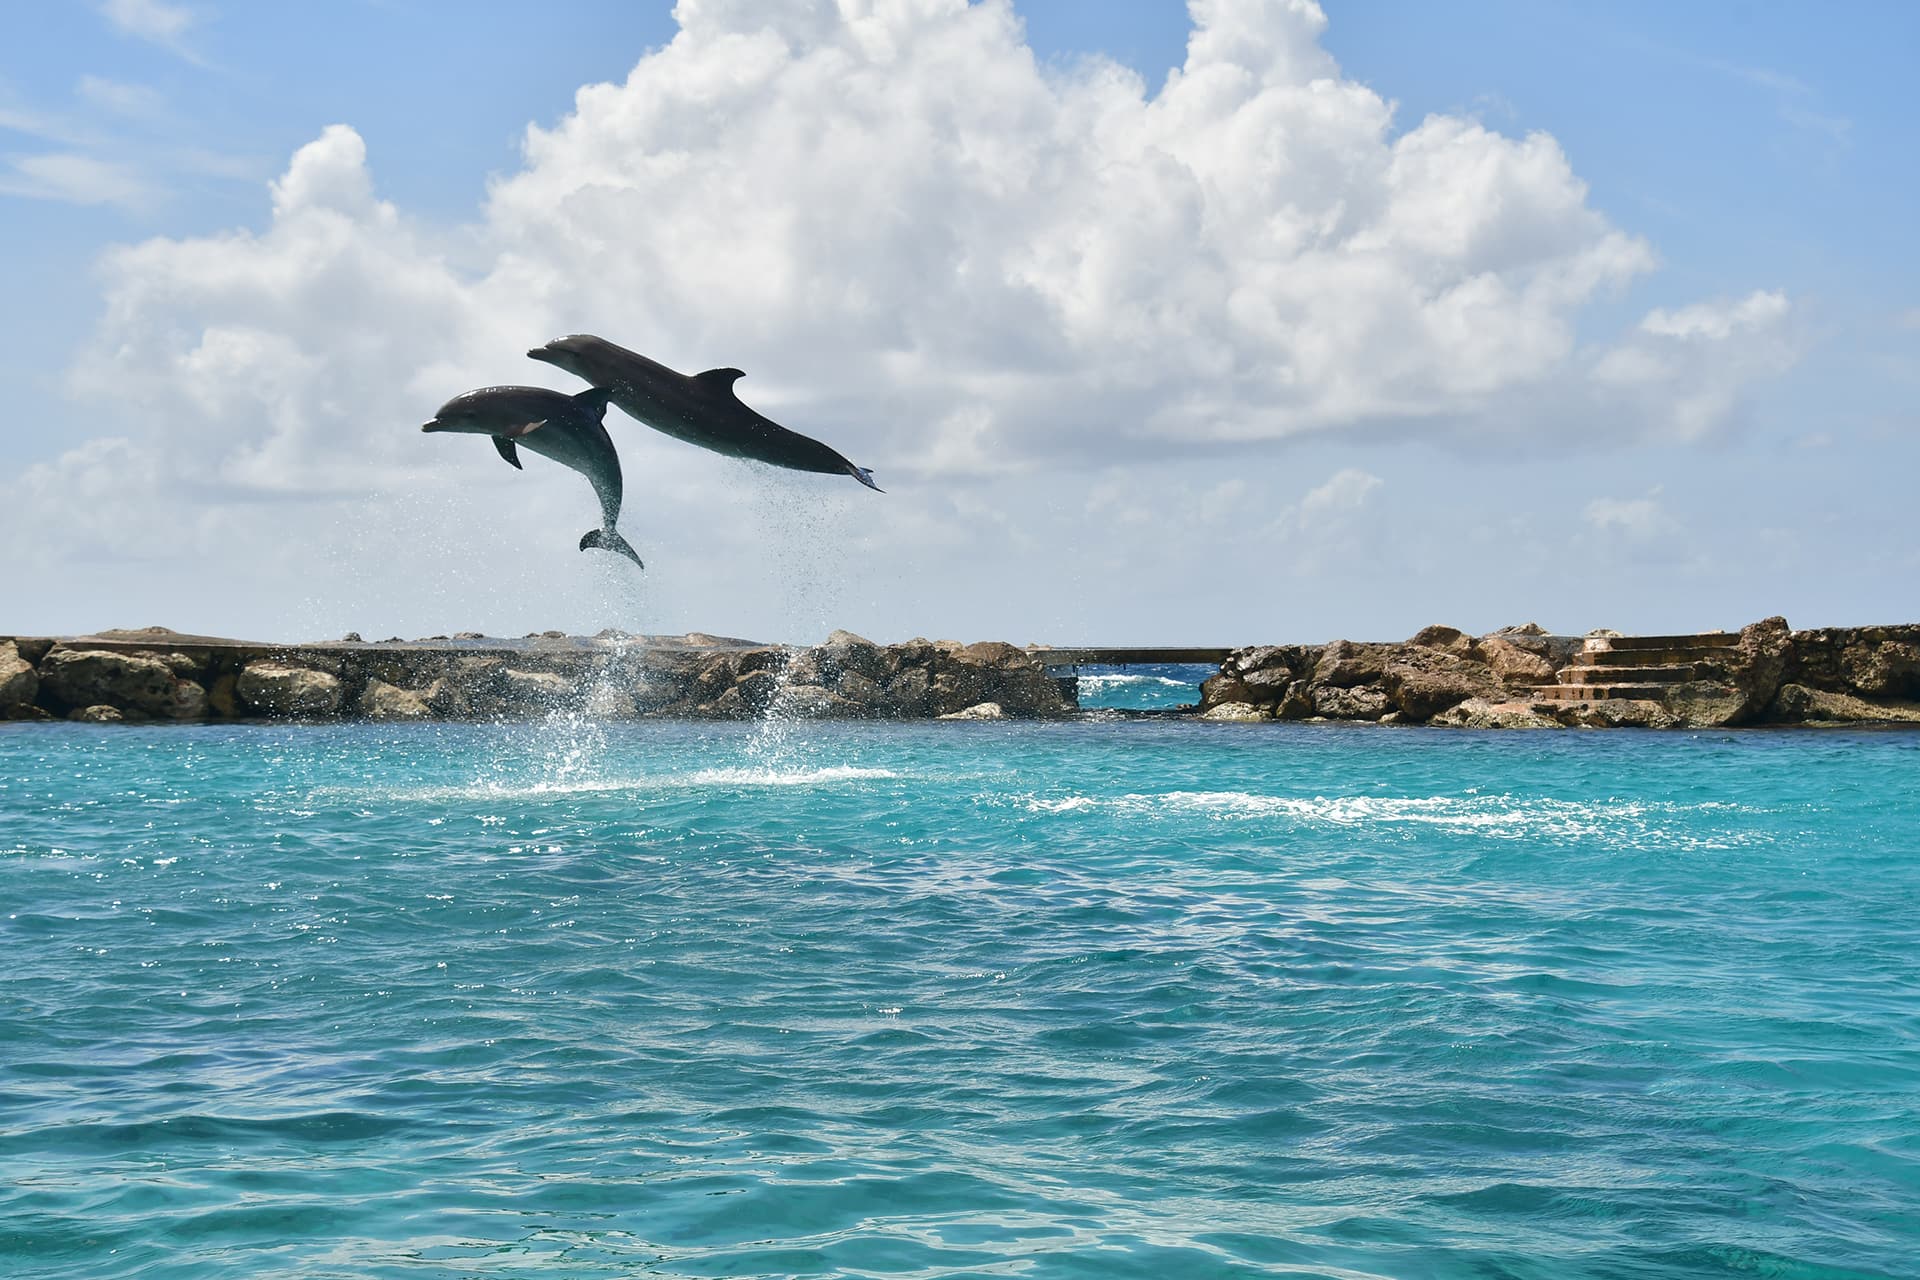 Twee dolfijnen springen extreem hoog uit de zee.